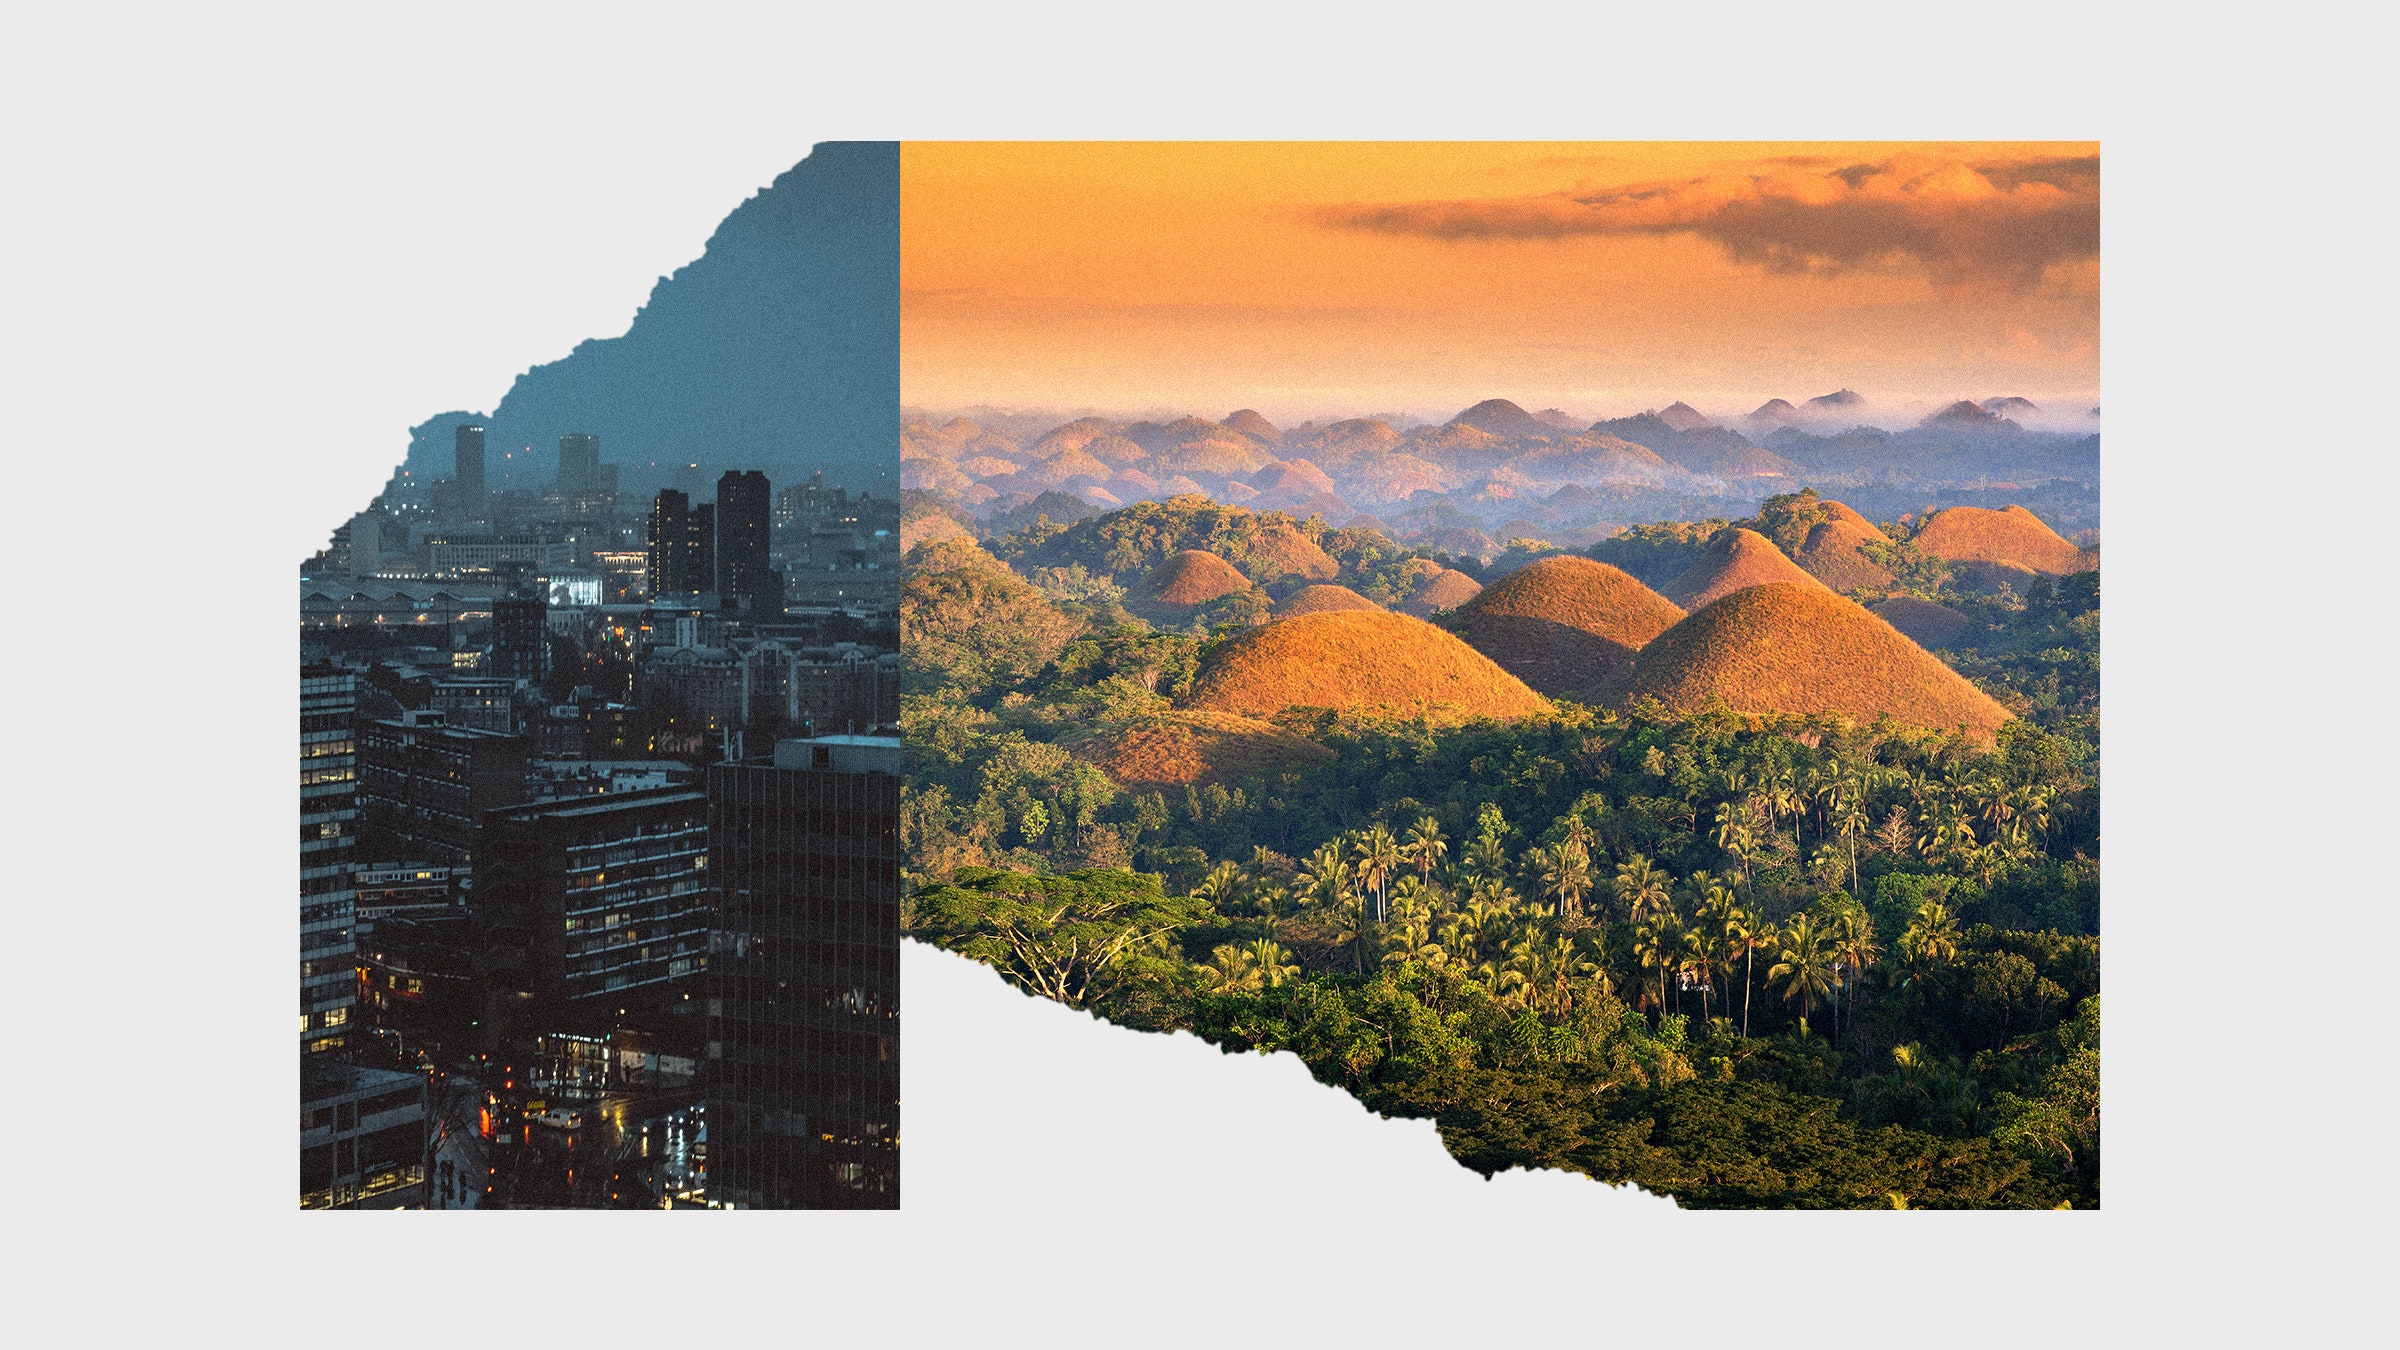 Colagem de imagens de uma paisagem tropical e uma cidade sombria